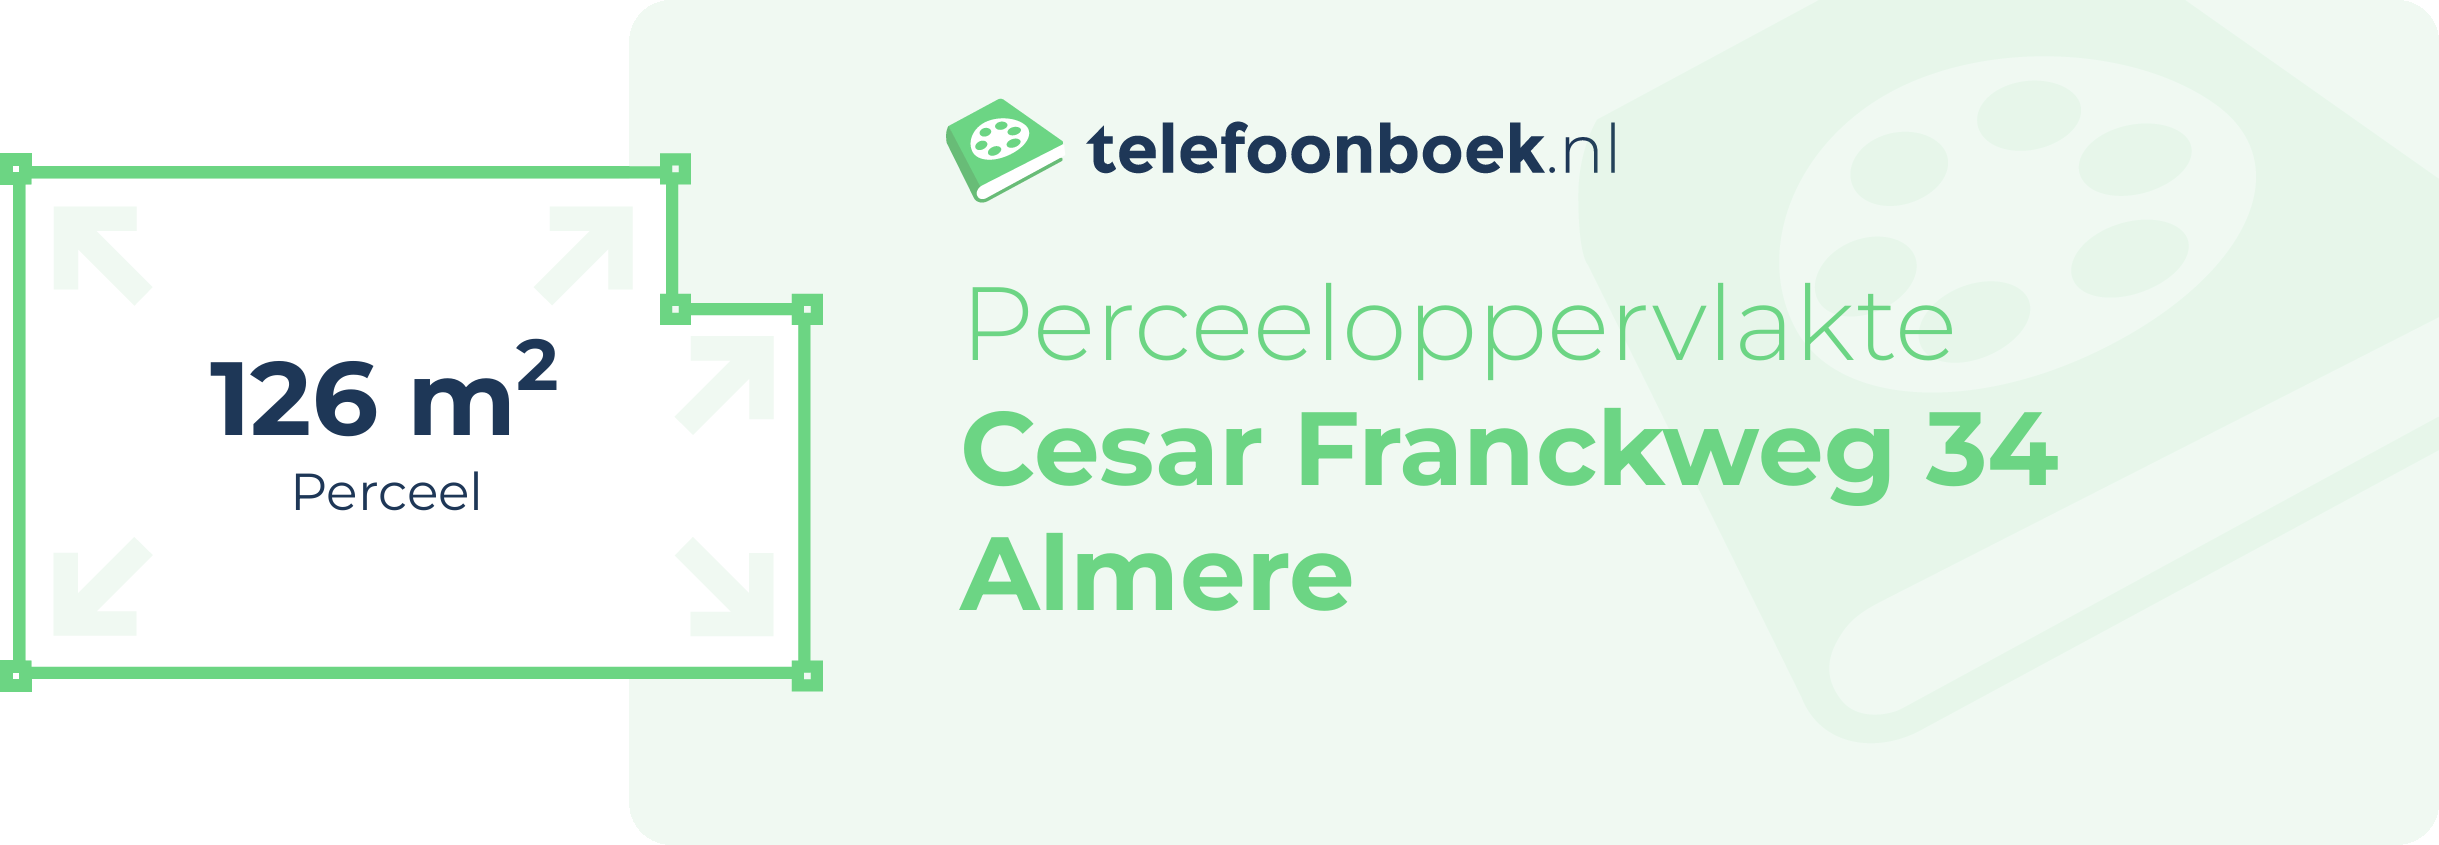 Perceeloppervlakte Cesar Franckweg 34 Almere